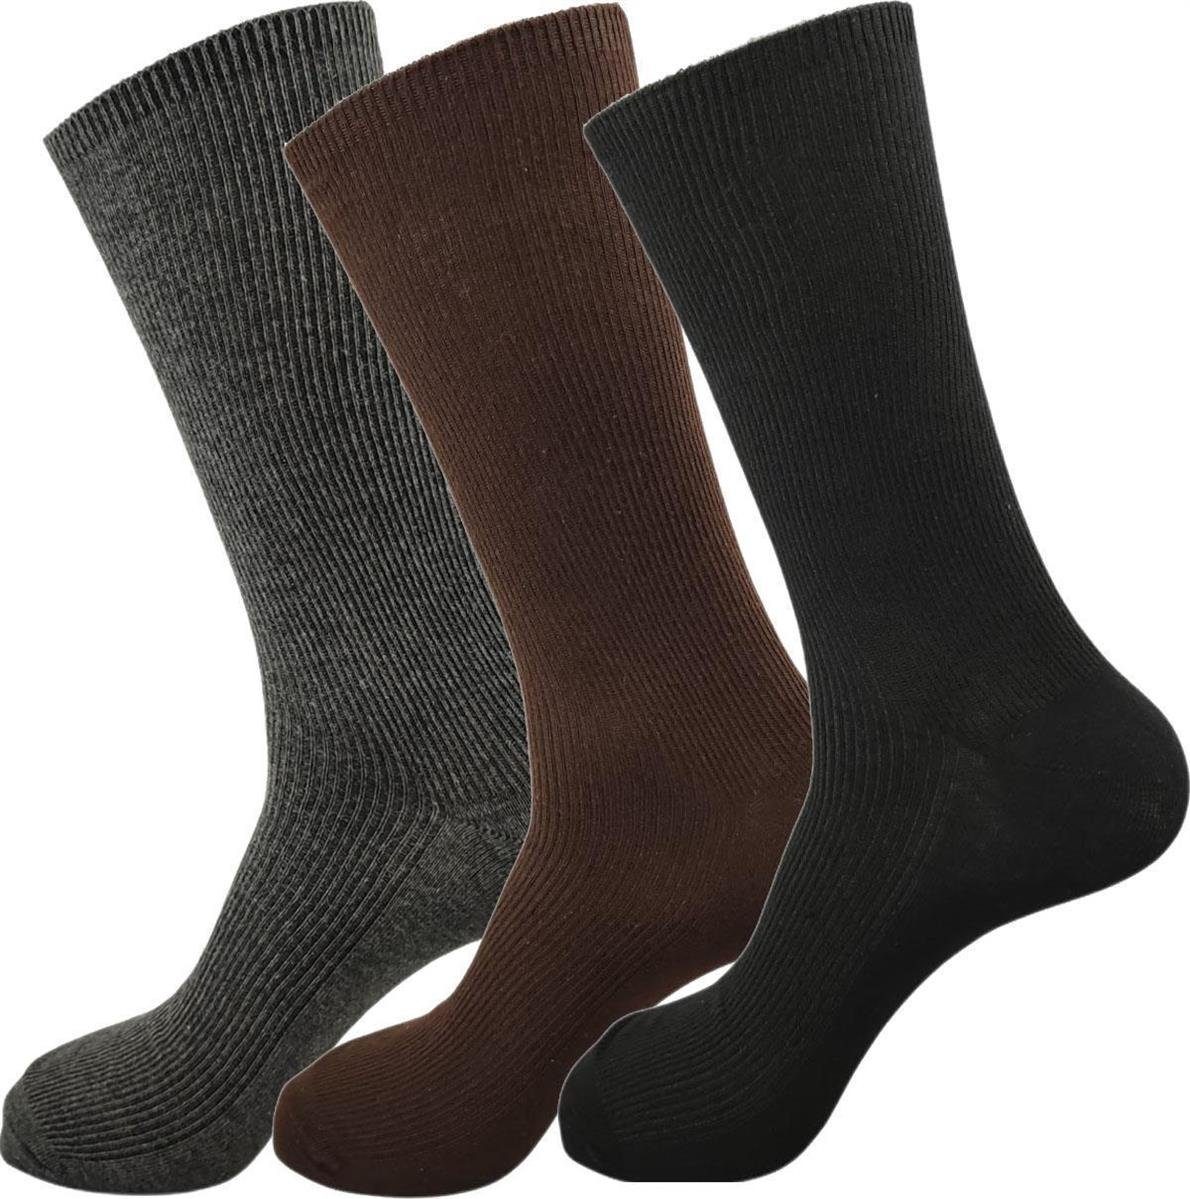 EloModa Basicsocken 3 Paar Socken in klassischer Form Freizeit Anzug Business; (3-Paar) Gemischt, grau, braun, schwarz | Kompressionsstrümpfe